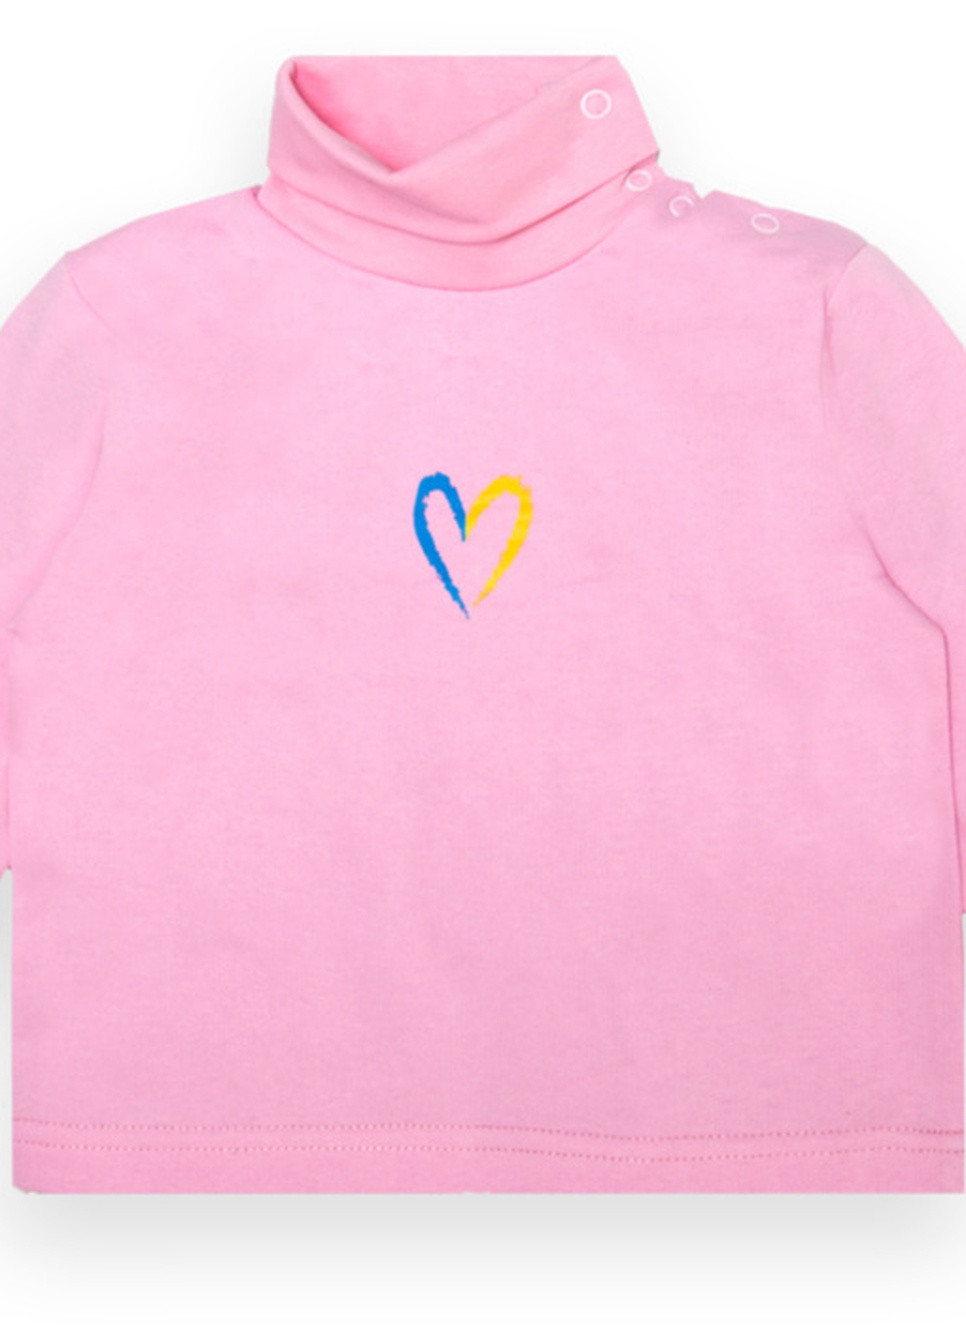 Розовый зимний детский свитер для девочки *сердечко* Габби